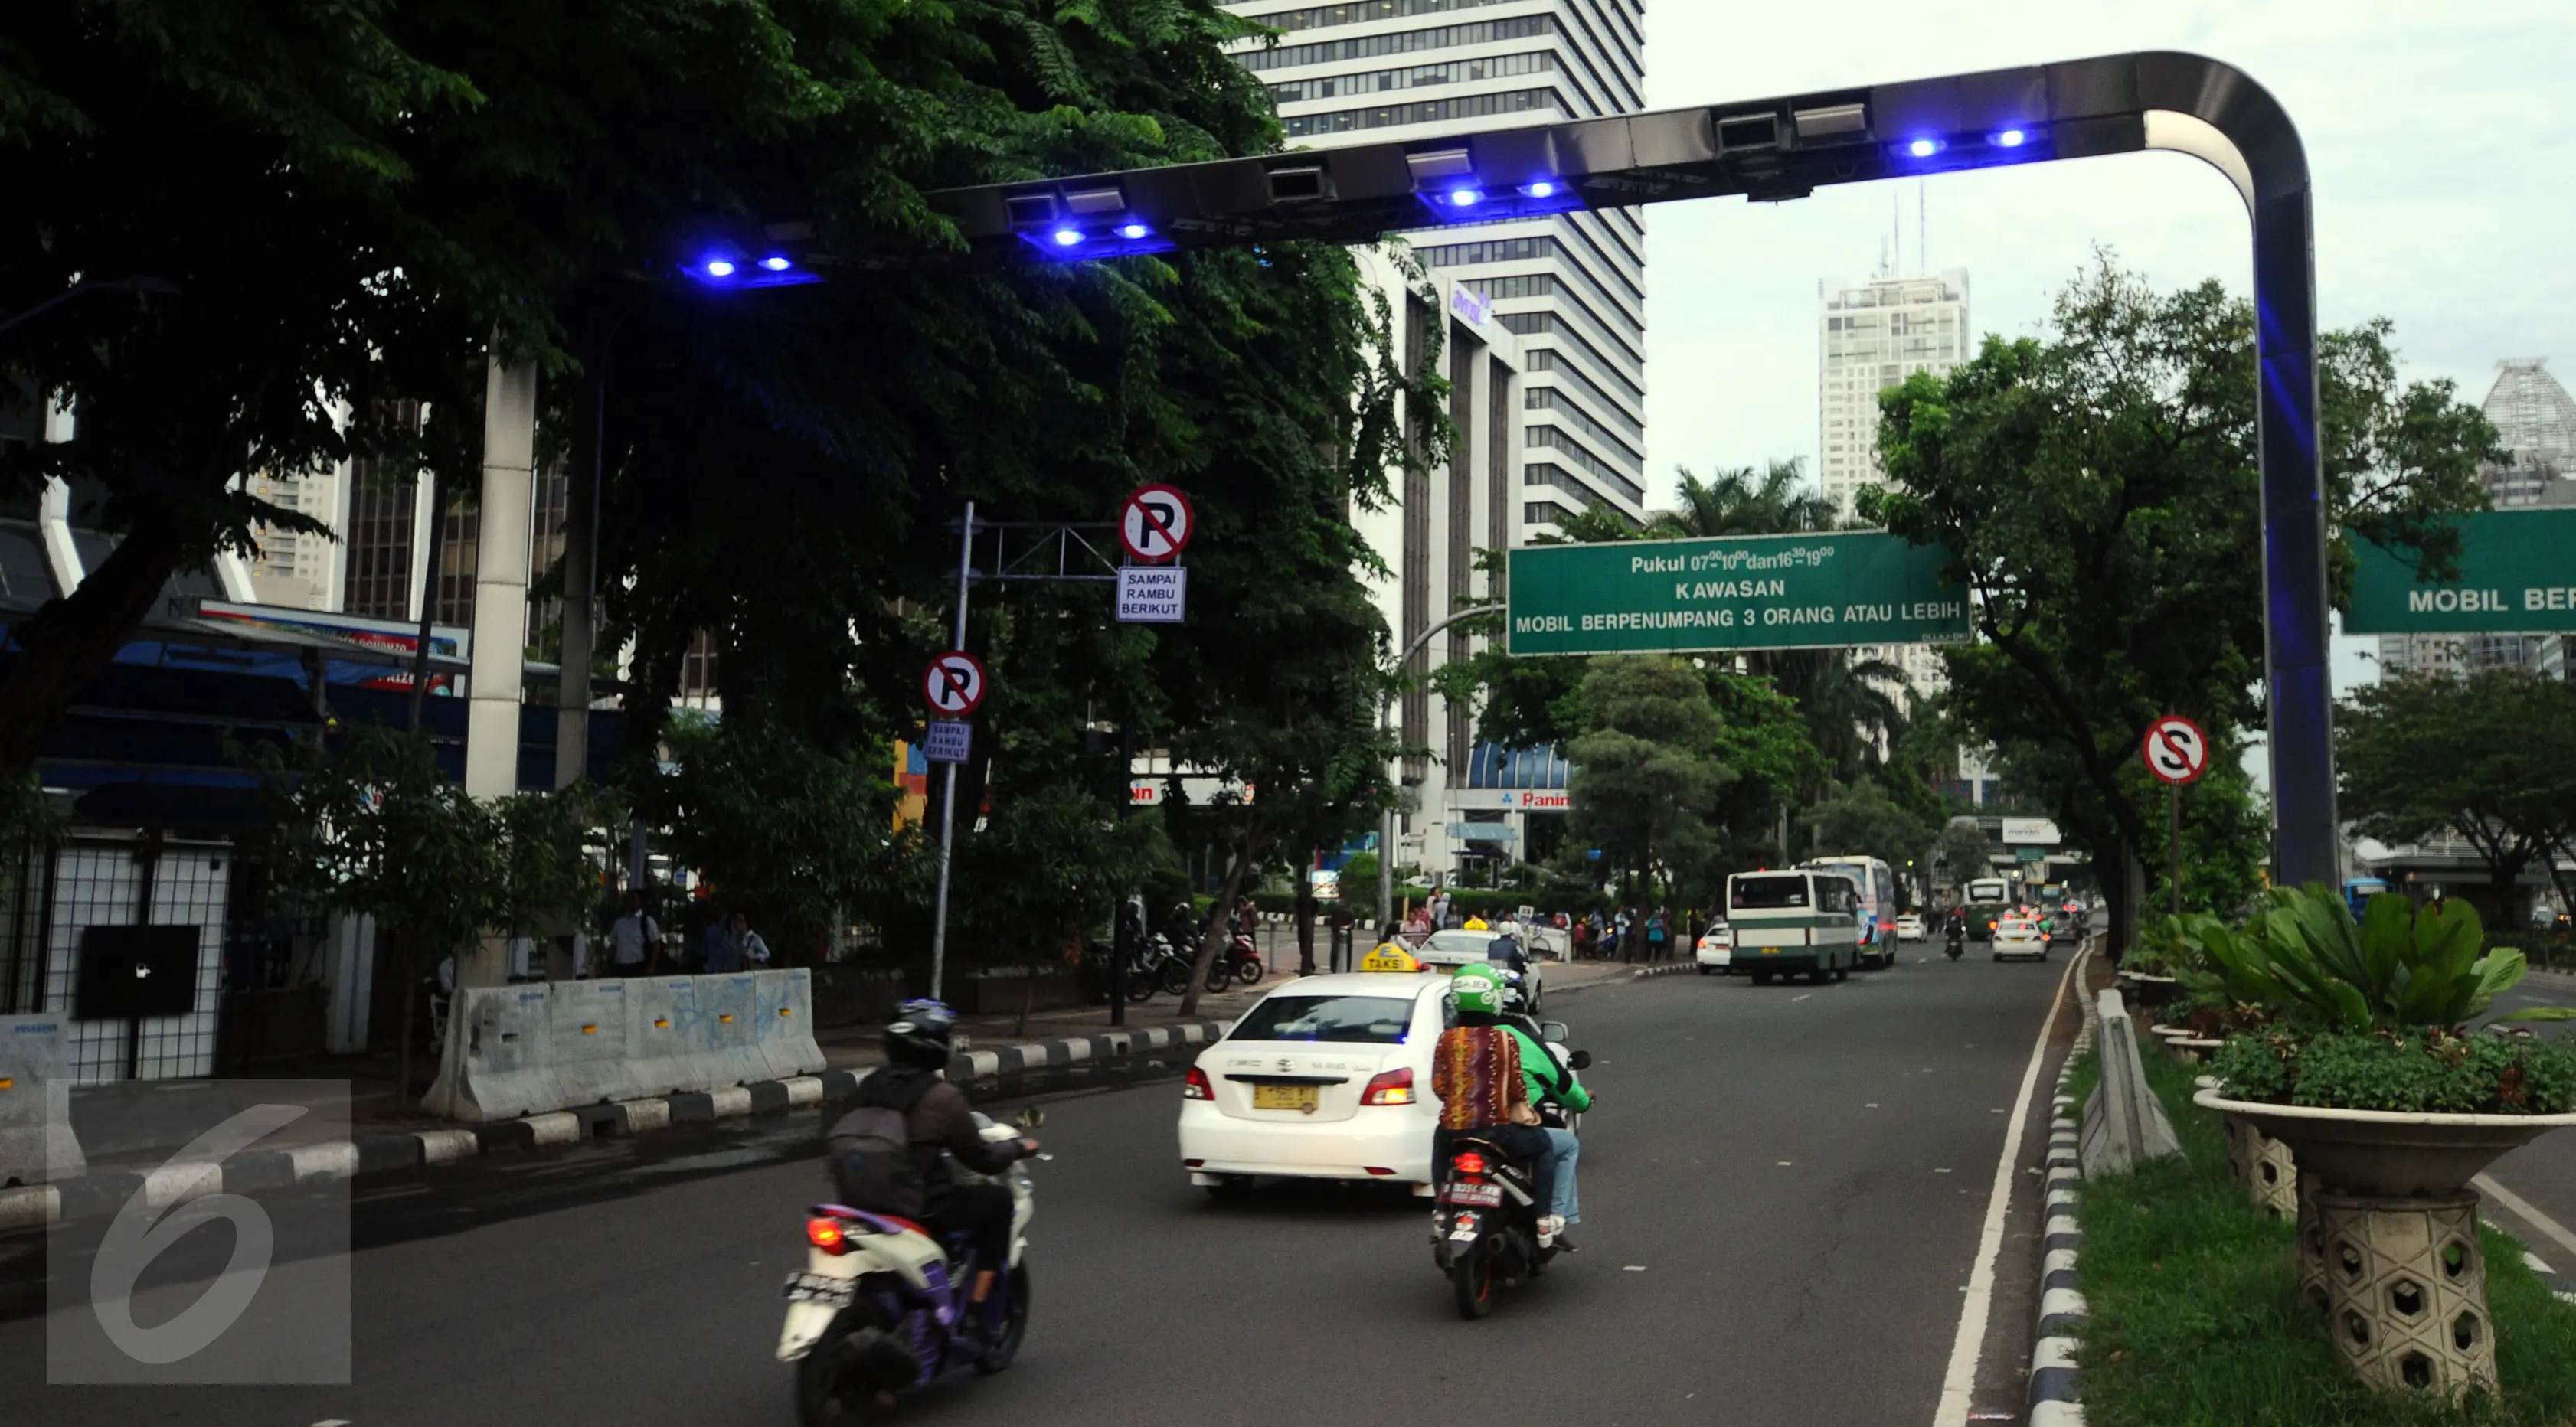 Pengendara melintas di bawah gate ERP di Jalan Jenderal Sudirman Jakarta, Senin (14/12). Meski sudah diuji coba pada pertengahan 2014 lalu, hingga kini penerapan jalan berbayar tersebut masih belum jelas. (Liputan6.com/Helmi Fithriansyah)